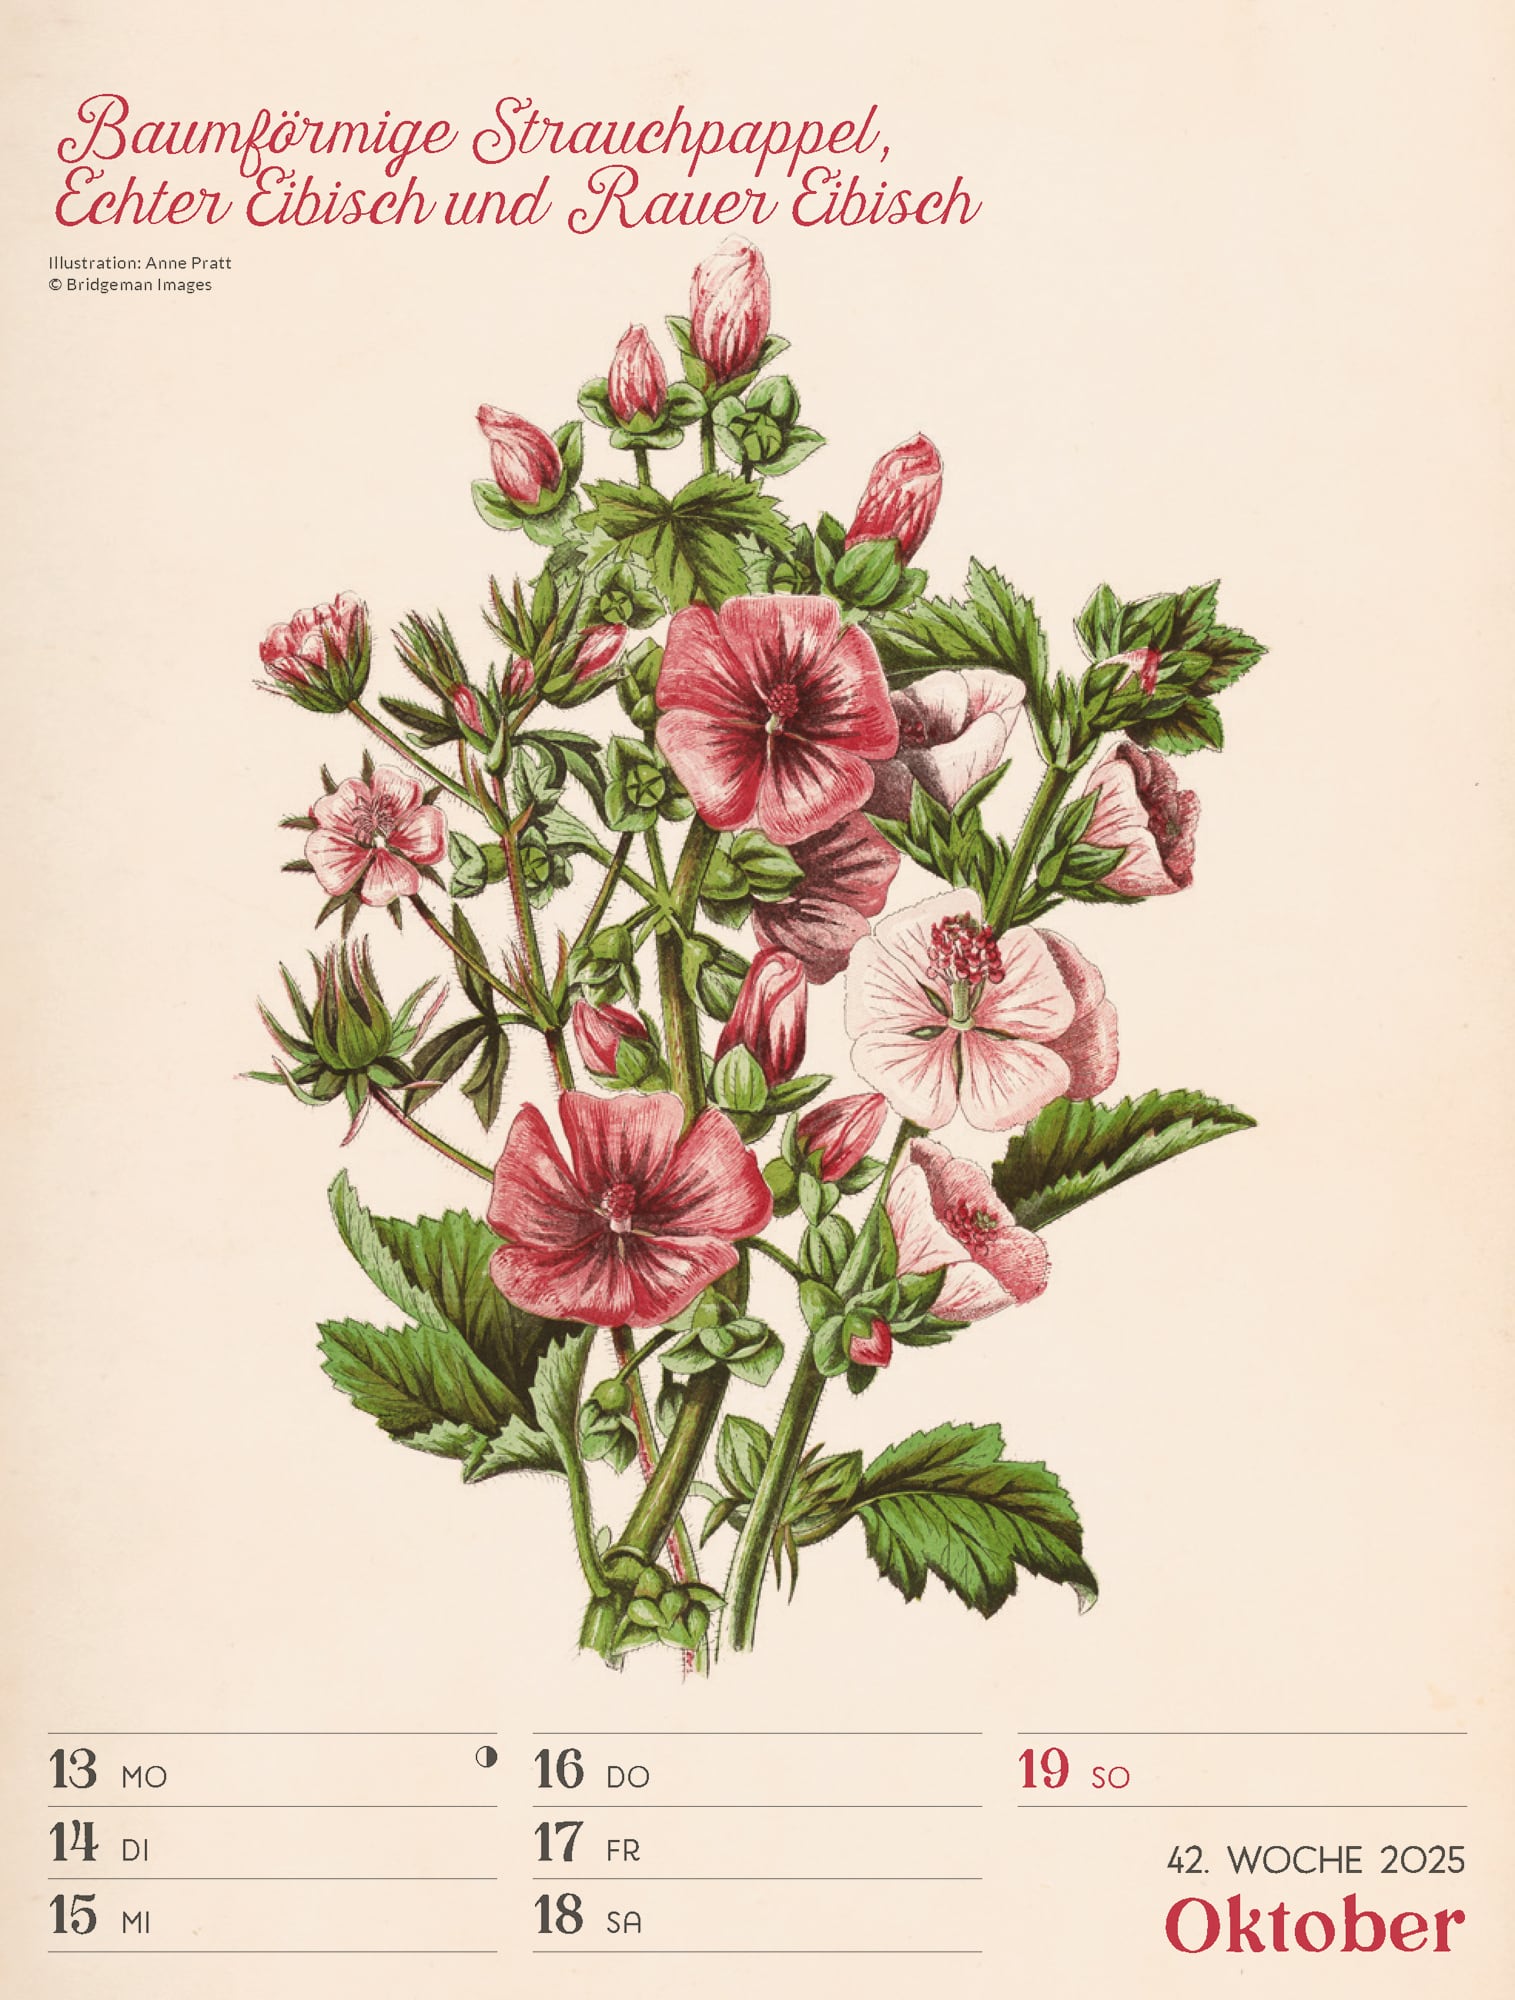 Ackermann Calendar Ars Floralis 2025 - Weekly Planner - Inside View 45